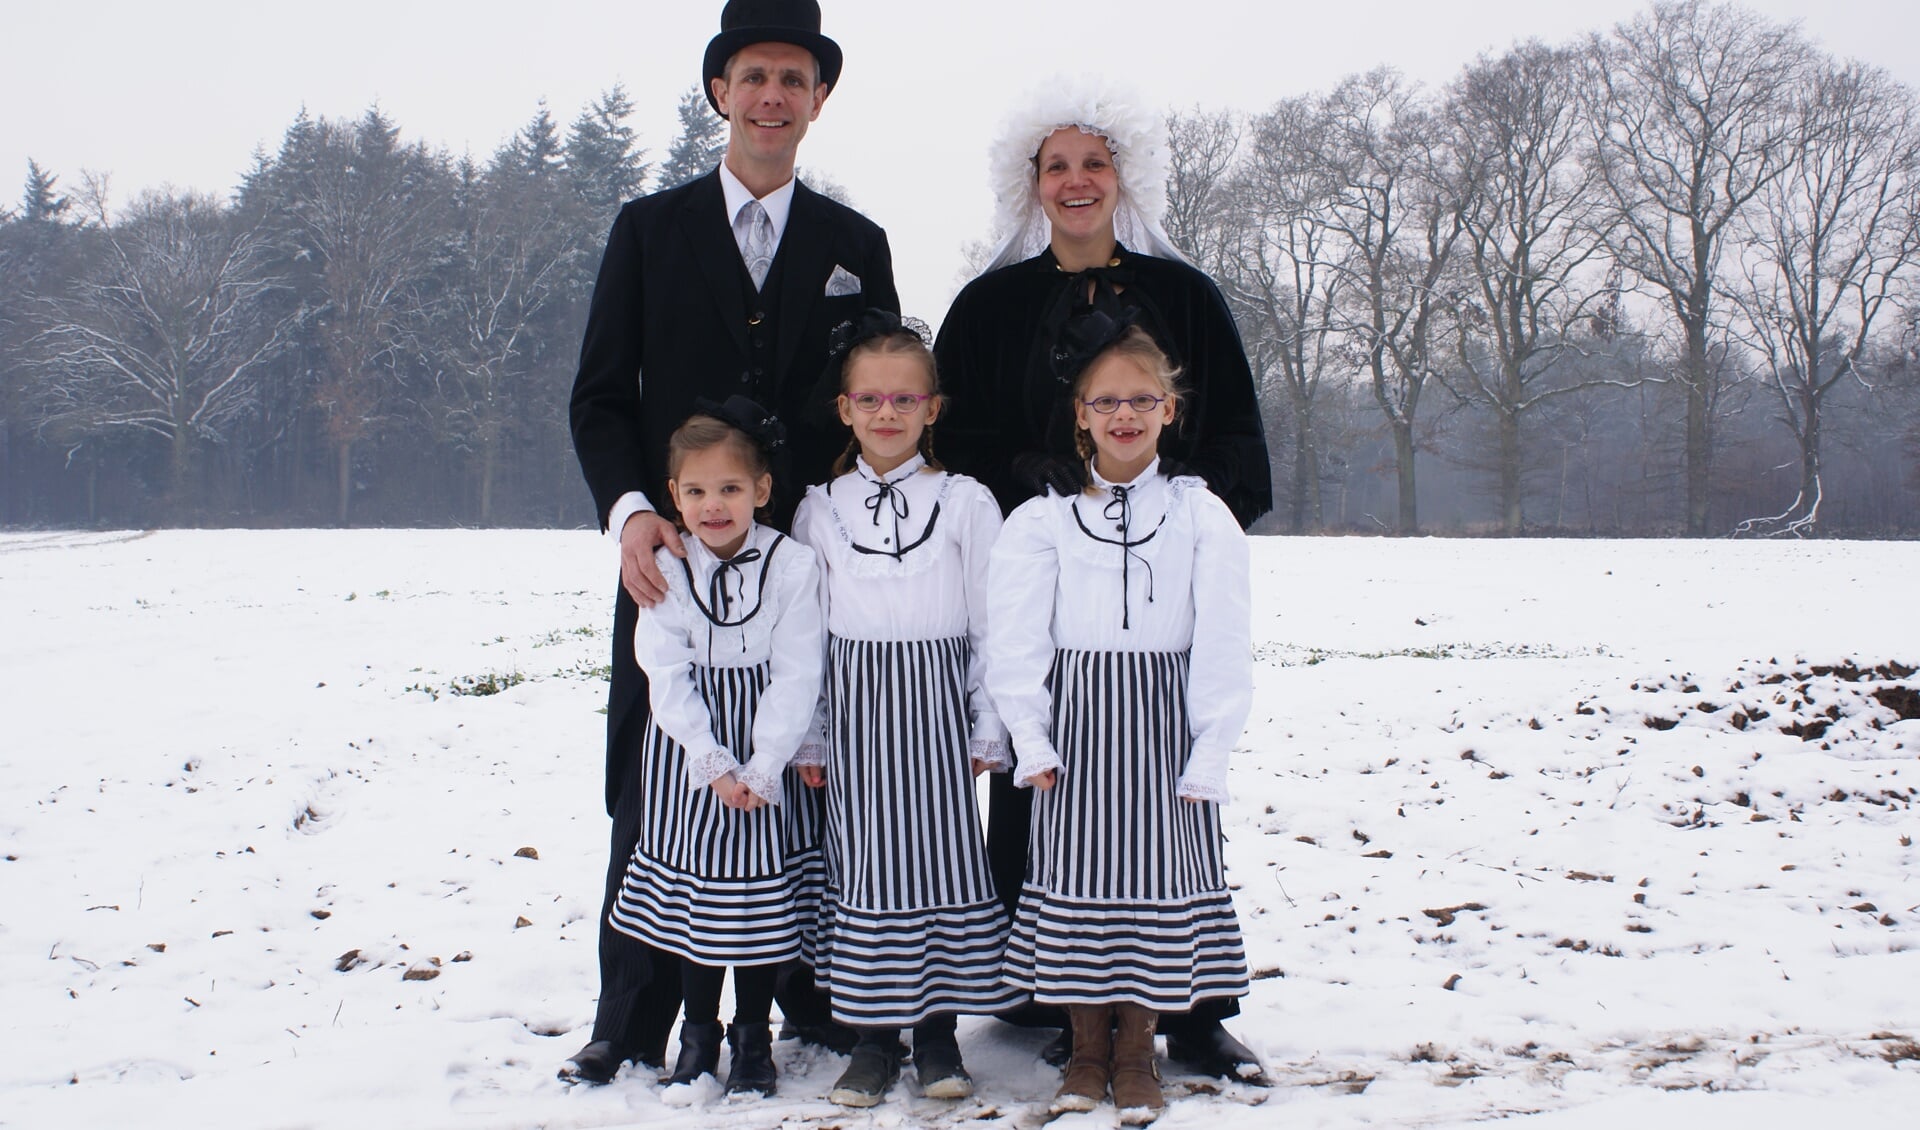 Het boerenbruidspaar van Geijsteren met hun drie kinderen.